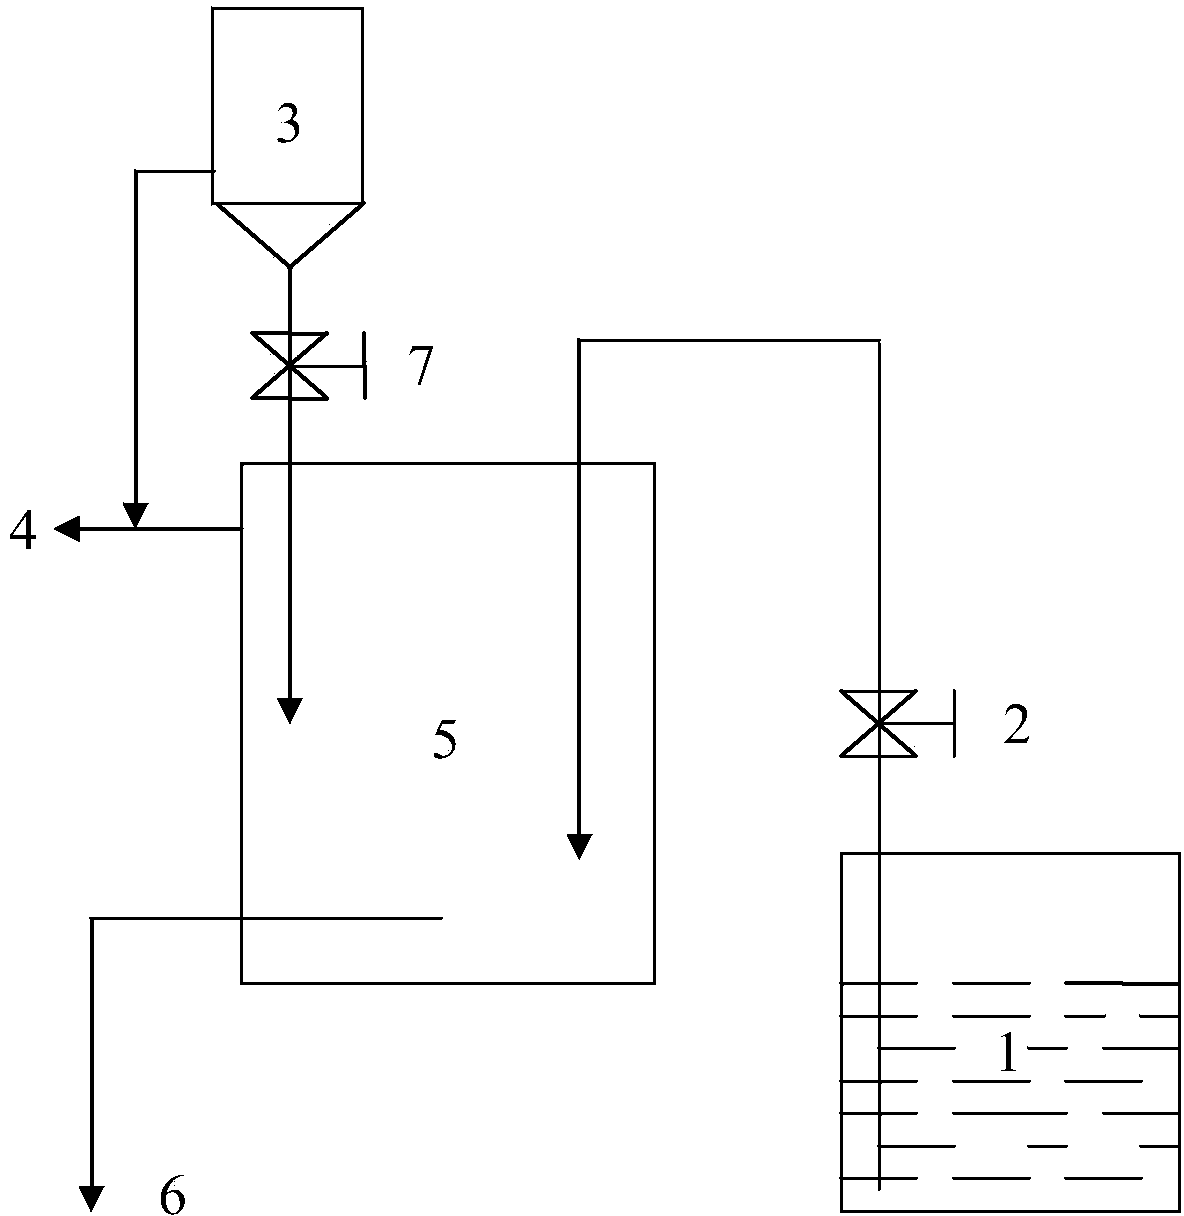 Vacuum synthesis method of lithium-aluminum alloy